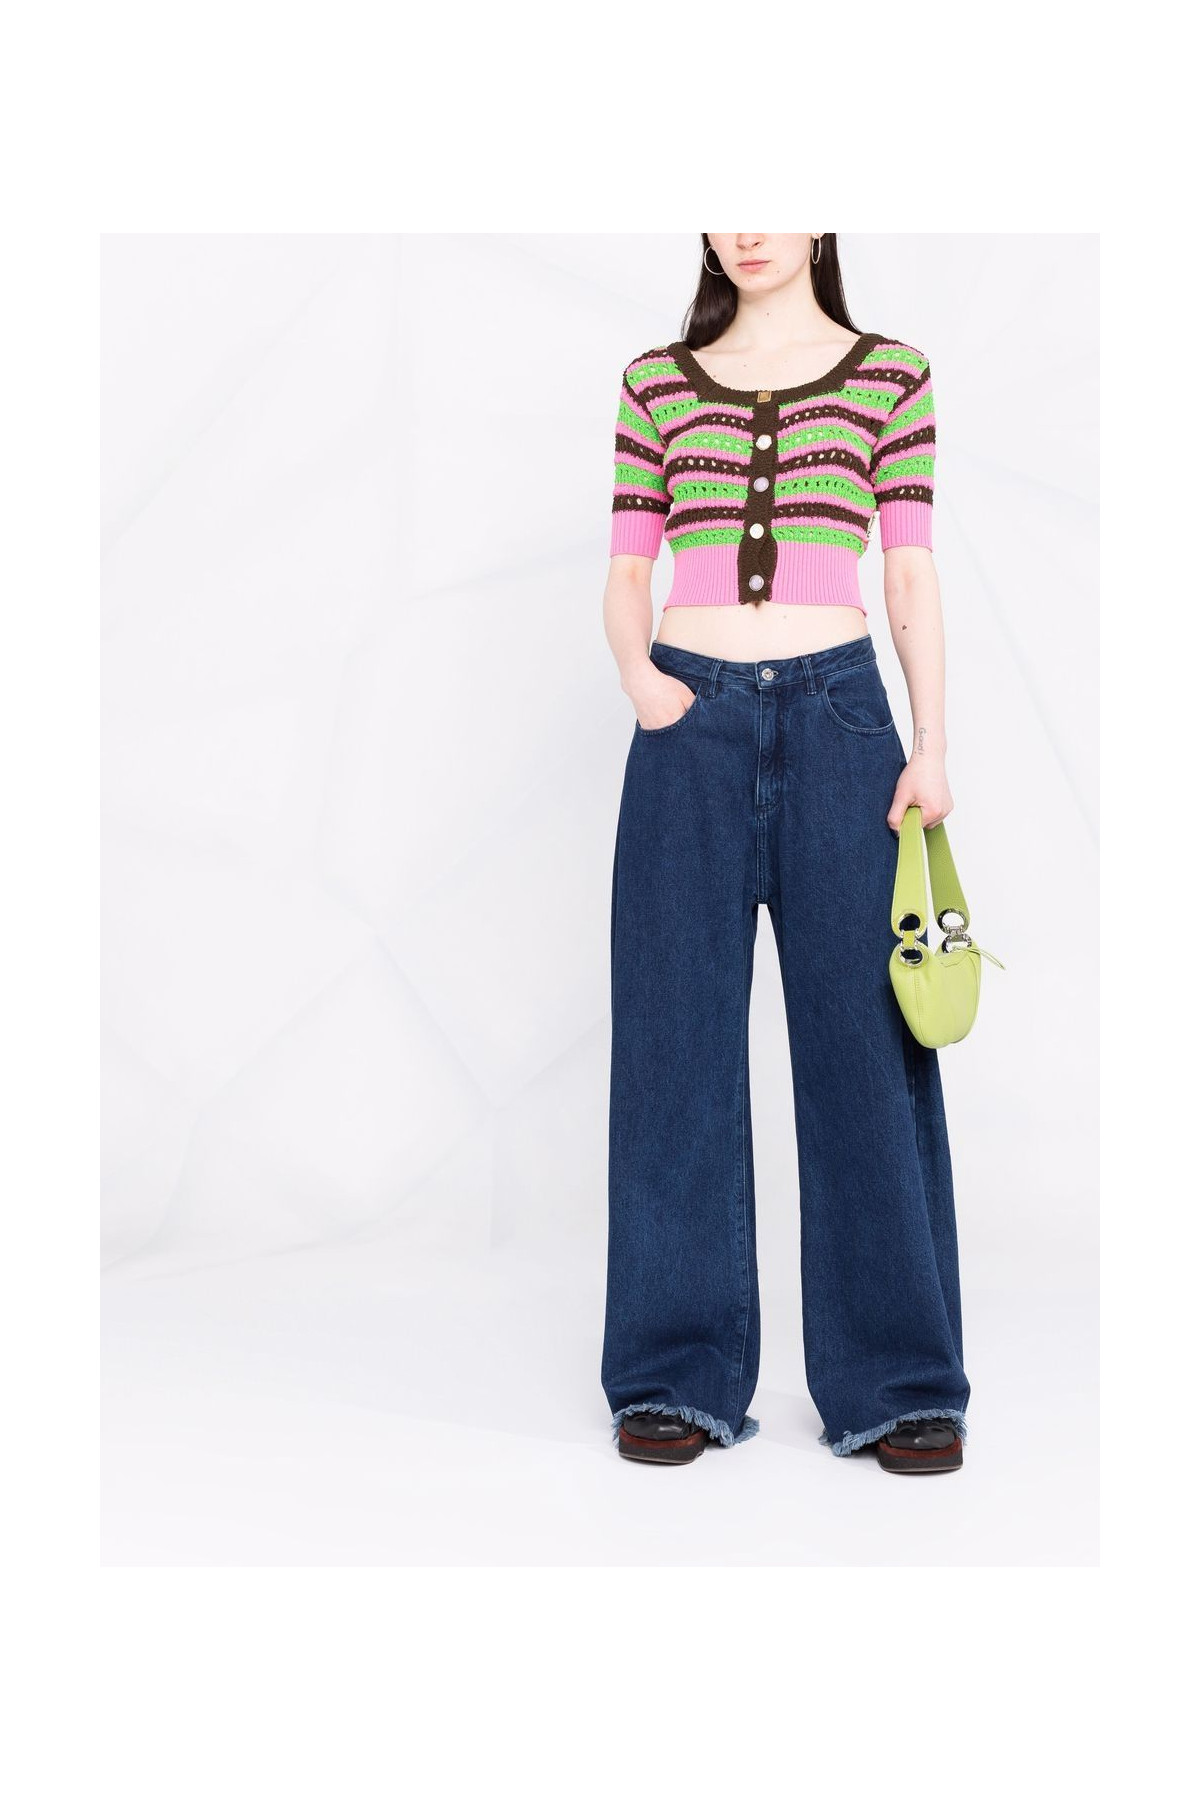 Choi Jewel Buttons Stripe Cardigan ATB737W